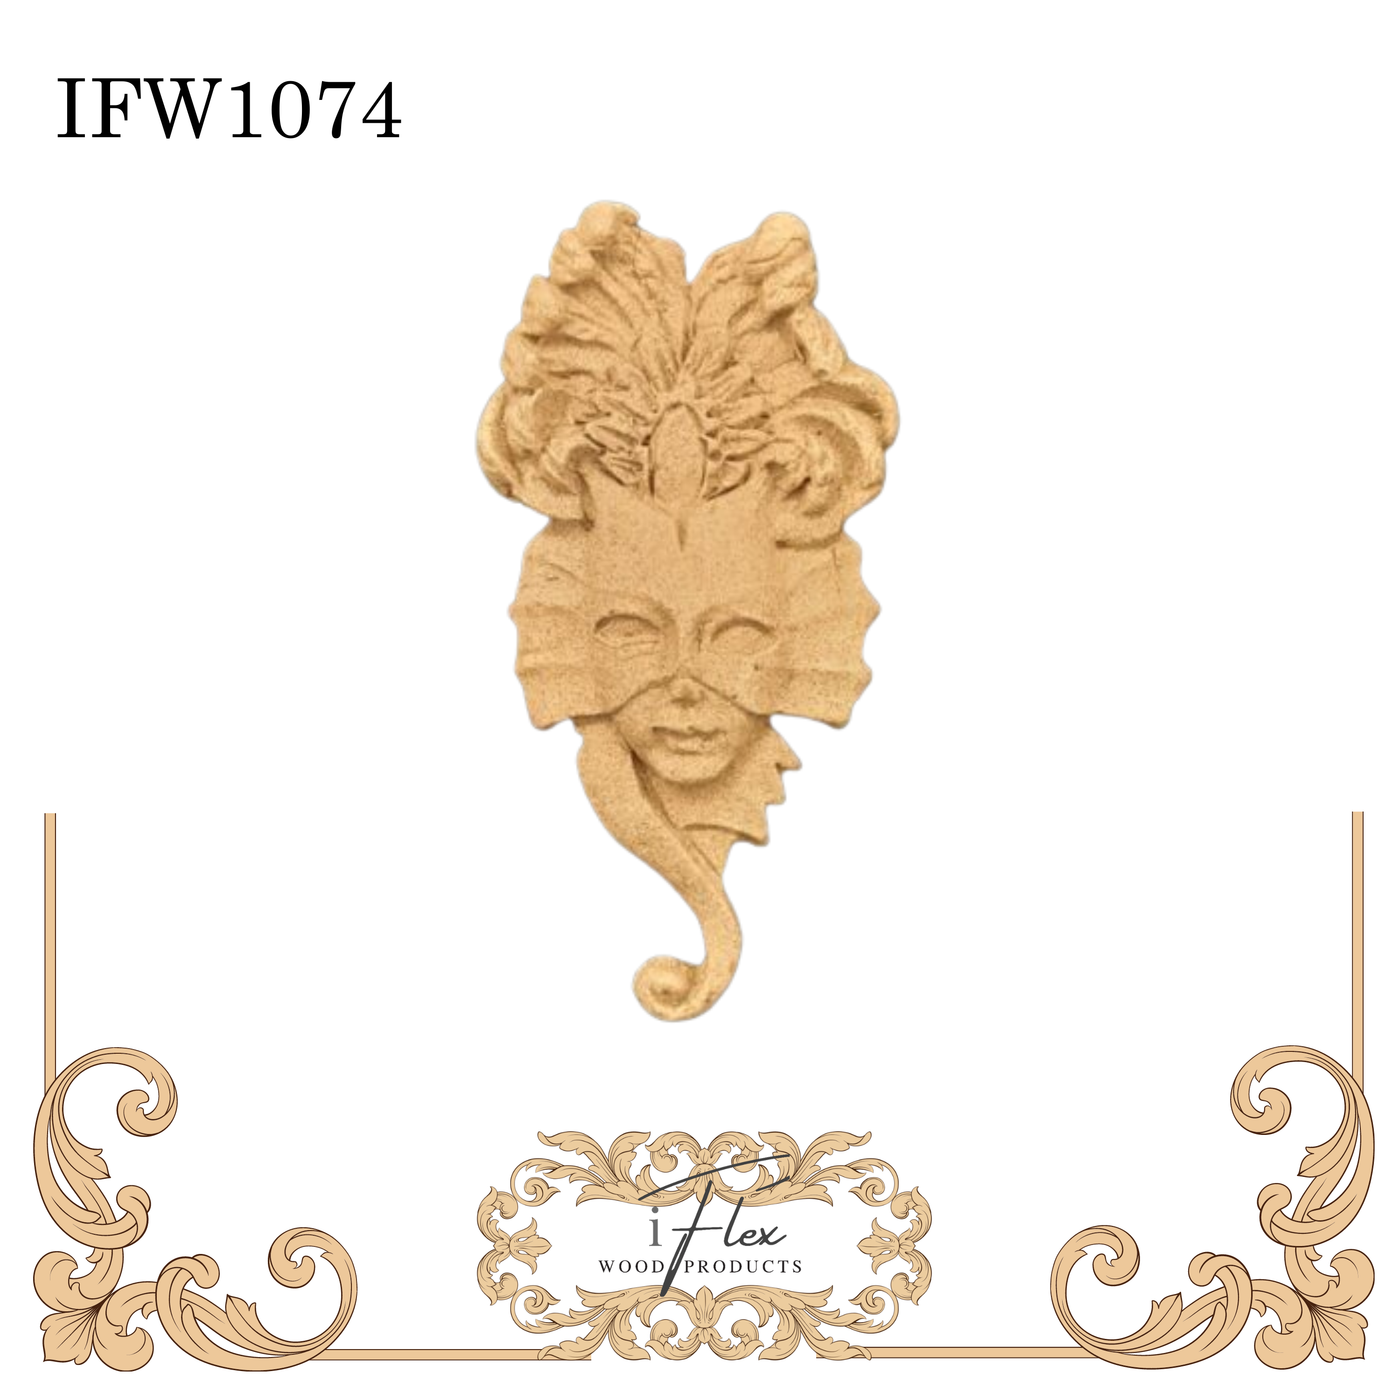 IFW 1074